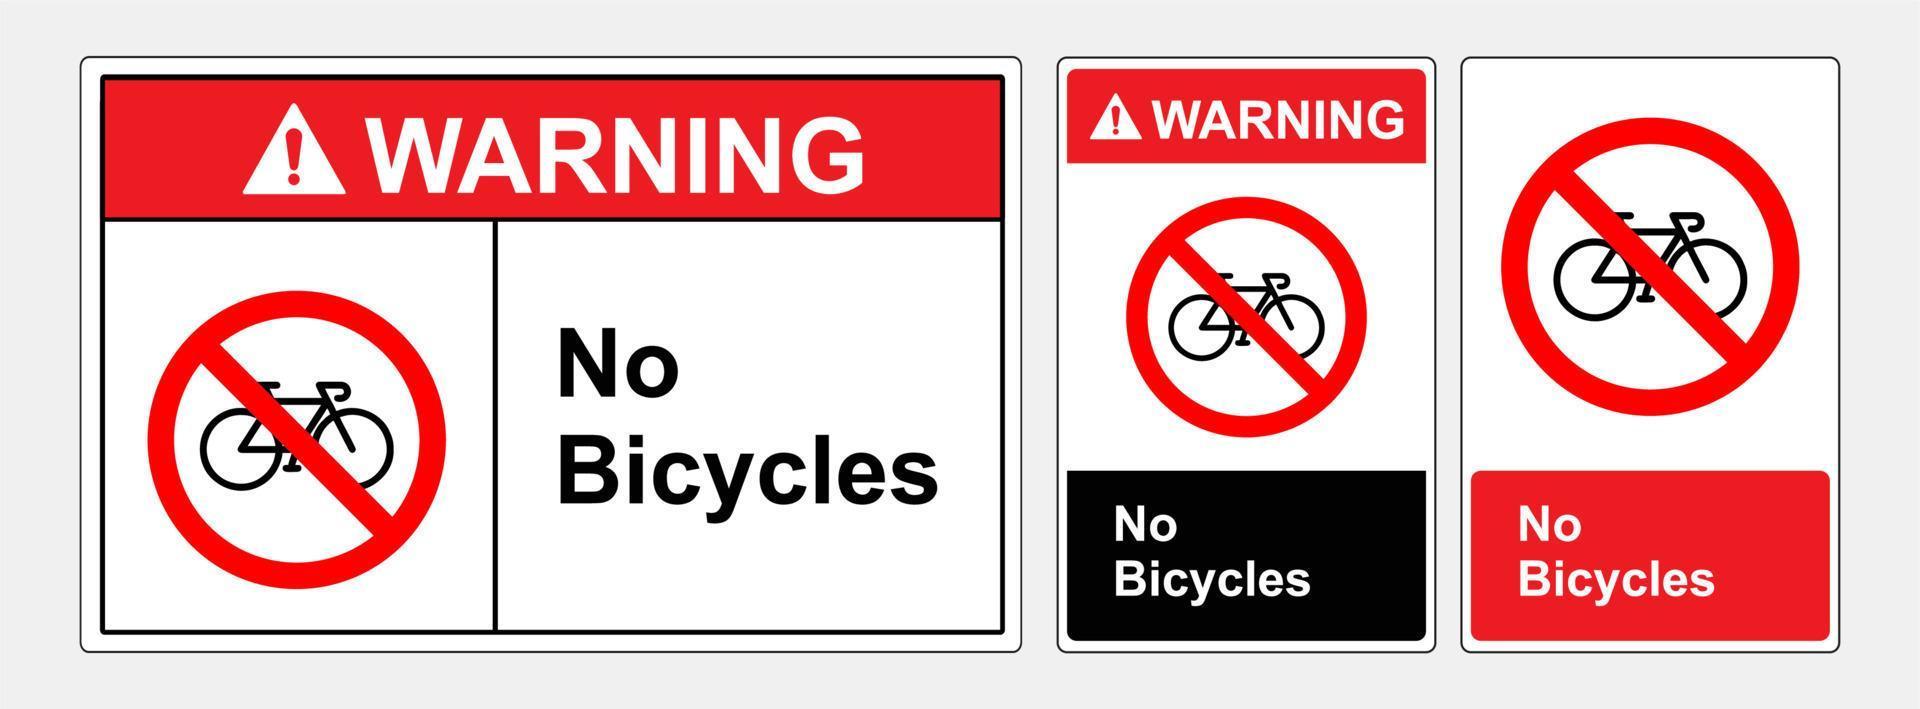 les vélos sont interdits d'accès. signe de symbole, illustration vectorielle. étiquette .eps10 vecteur